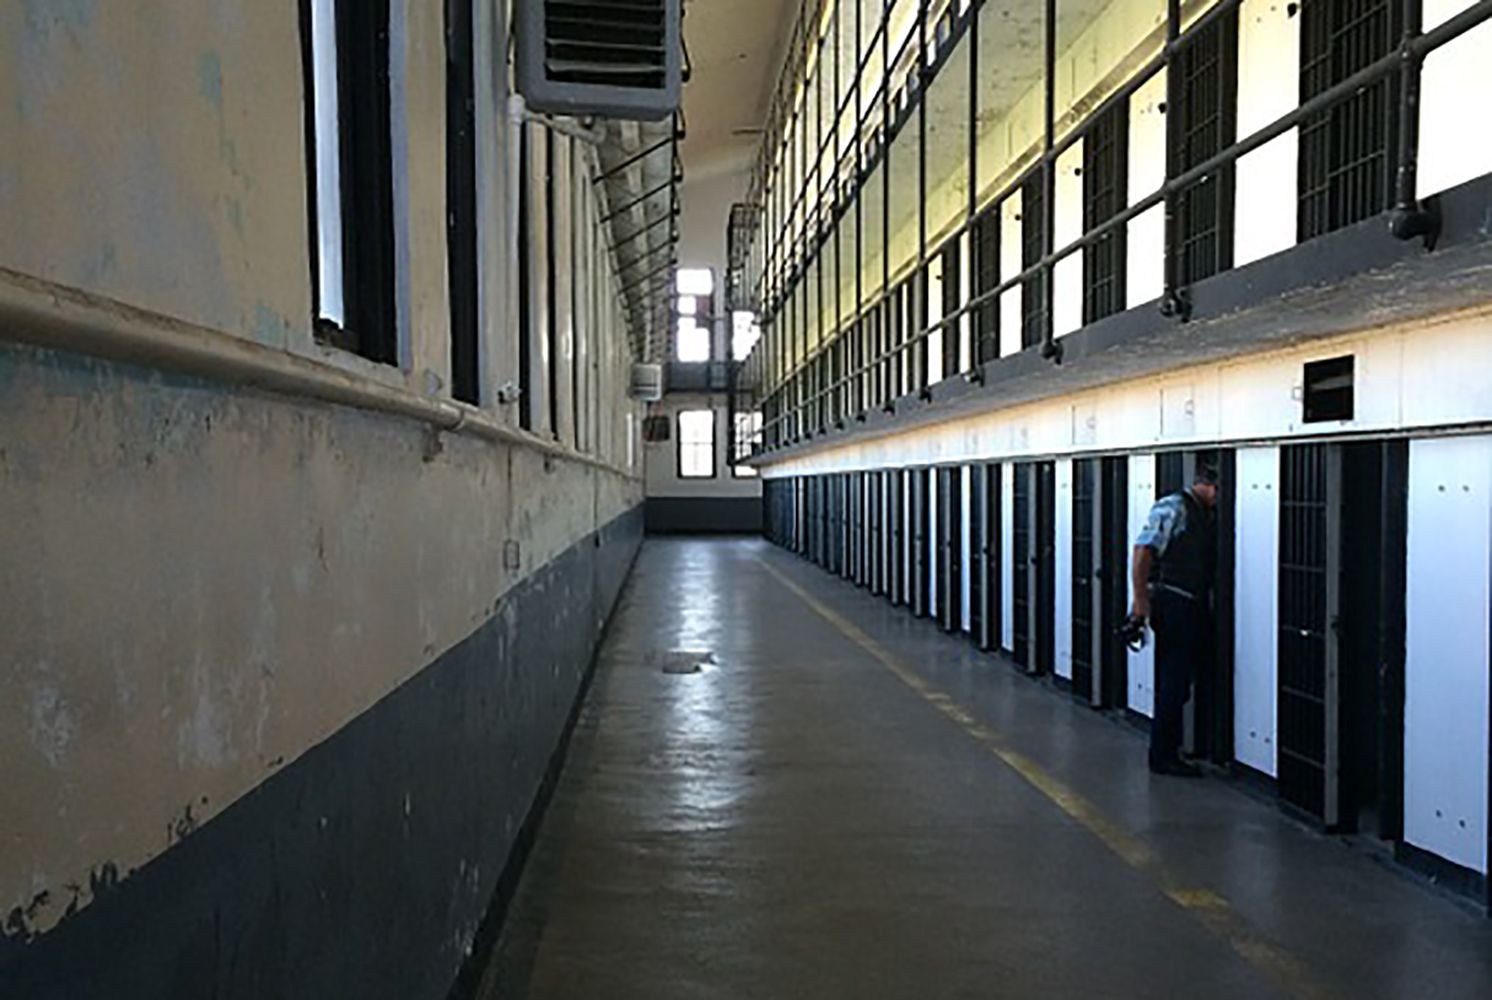 Prisión Brians 1 - Pixbay